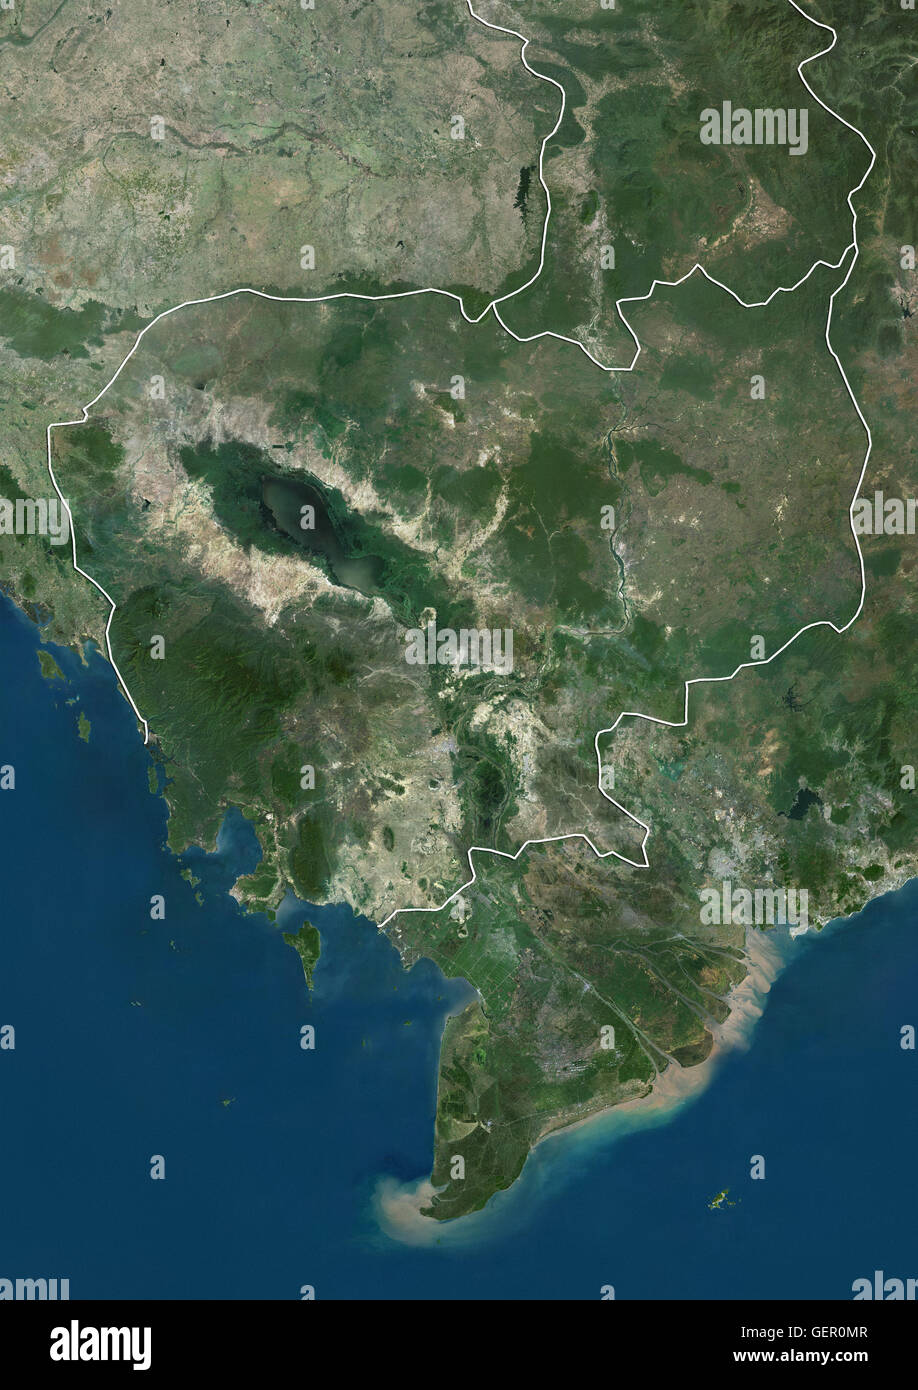 Satellitenansicht von Kambodscha (mit Ländergrenzen). Dieses Bild wurde aus Daten von Landsat-Satelliten erworben erstellt. Stockfoto